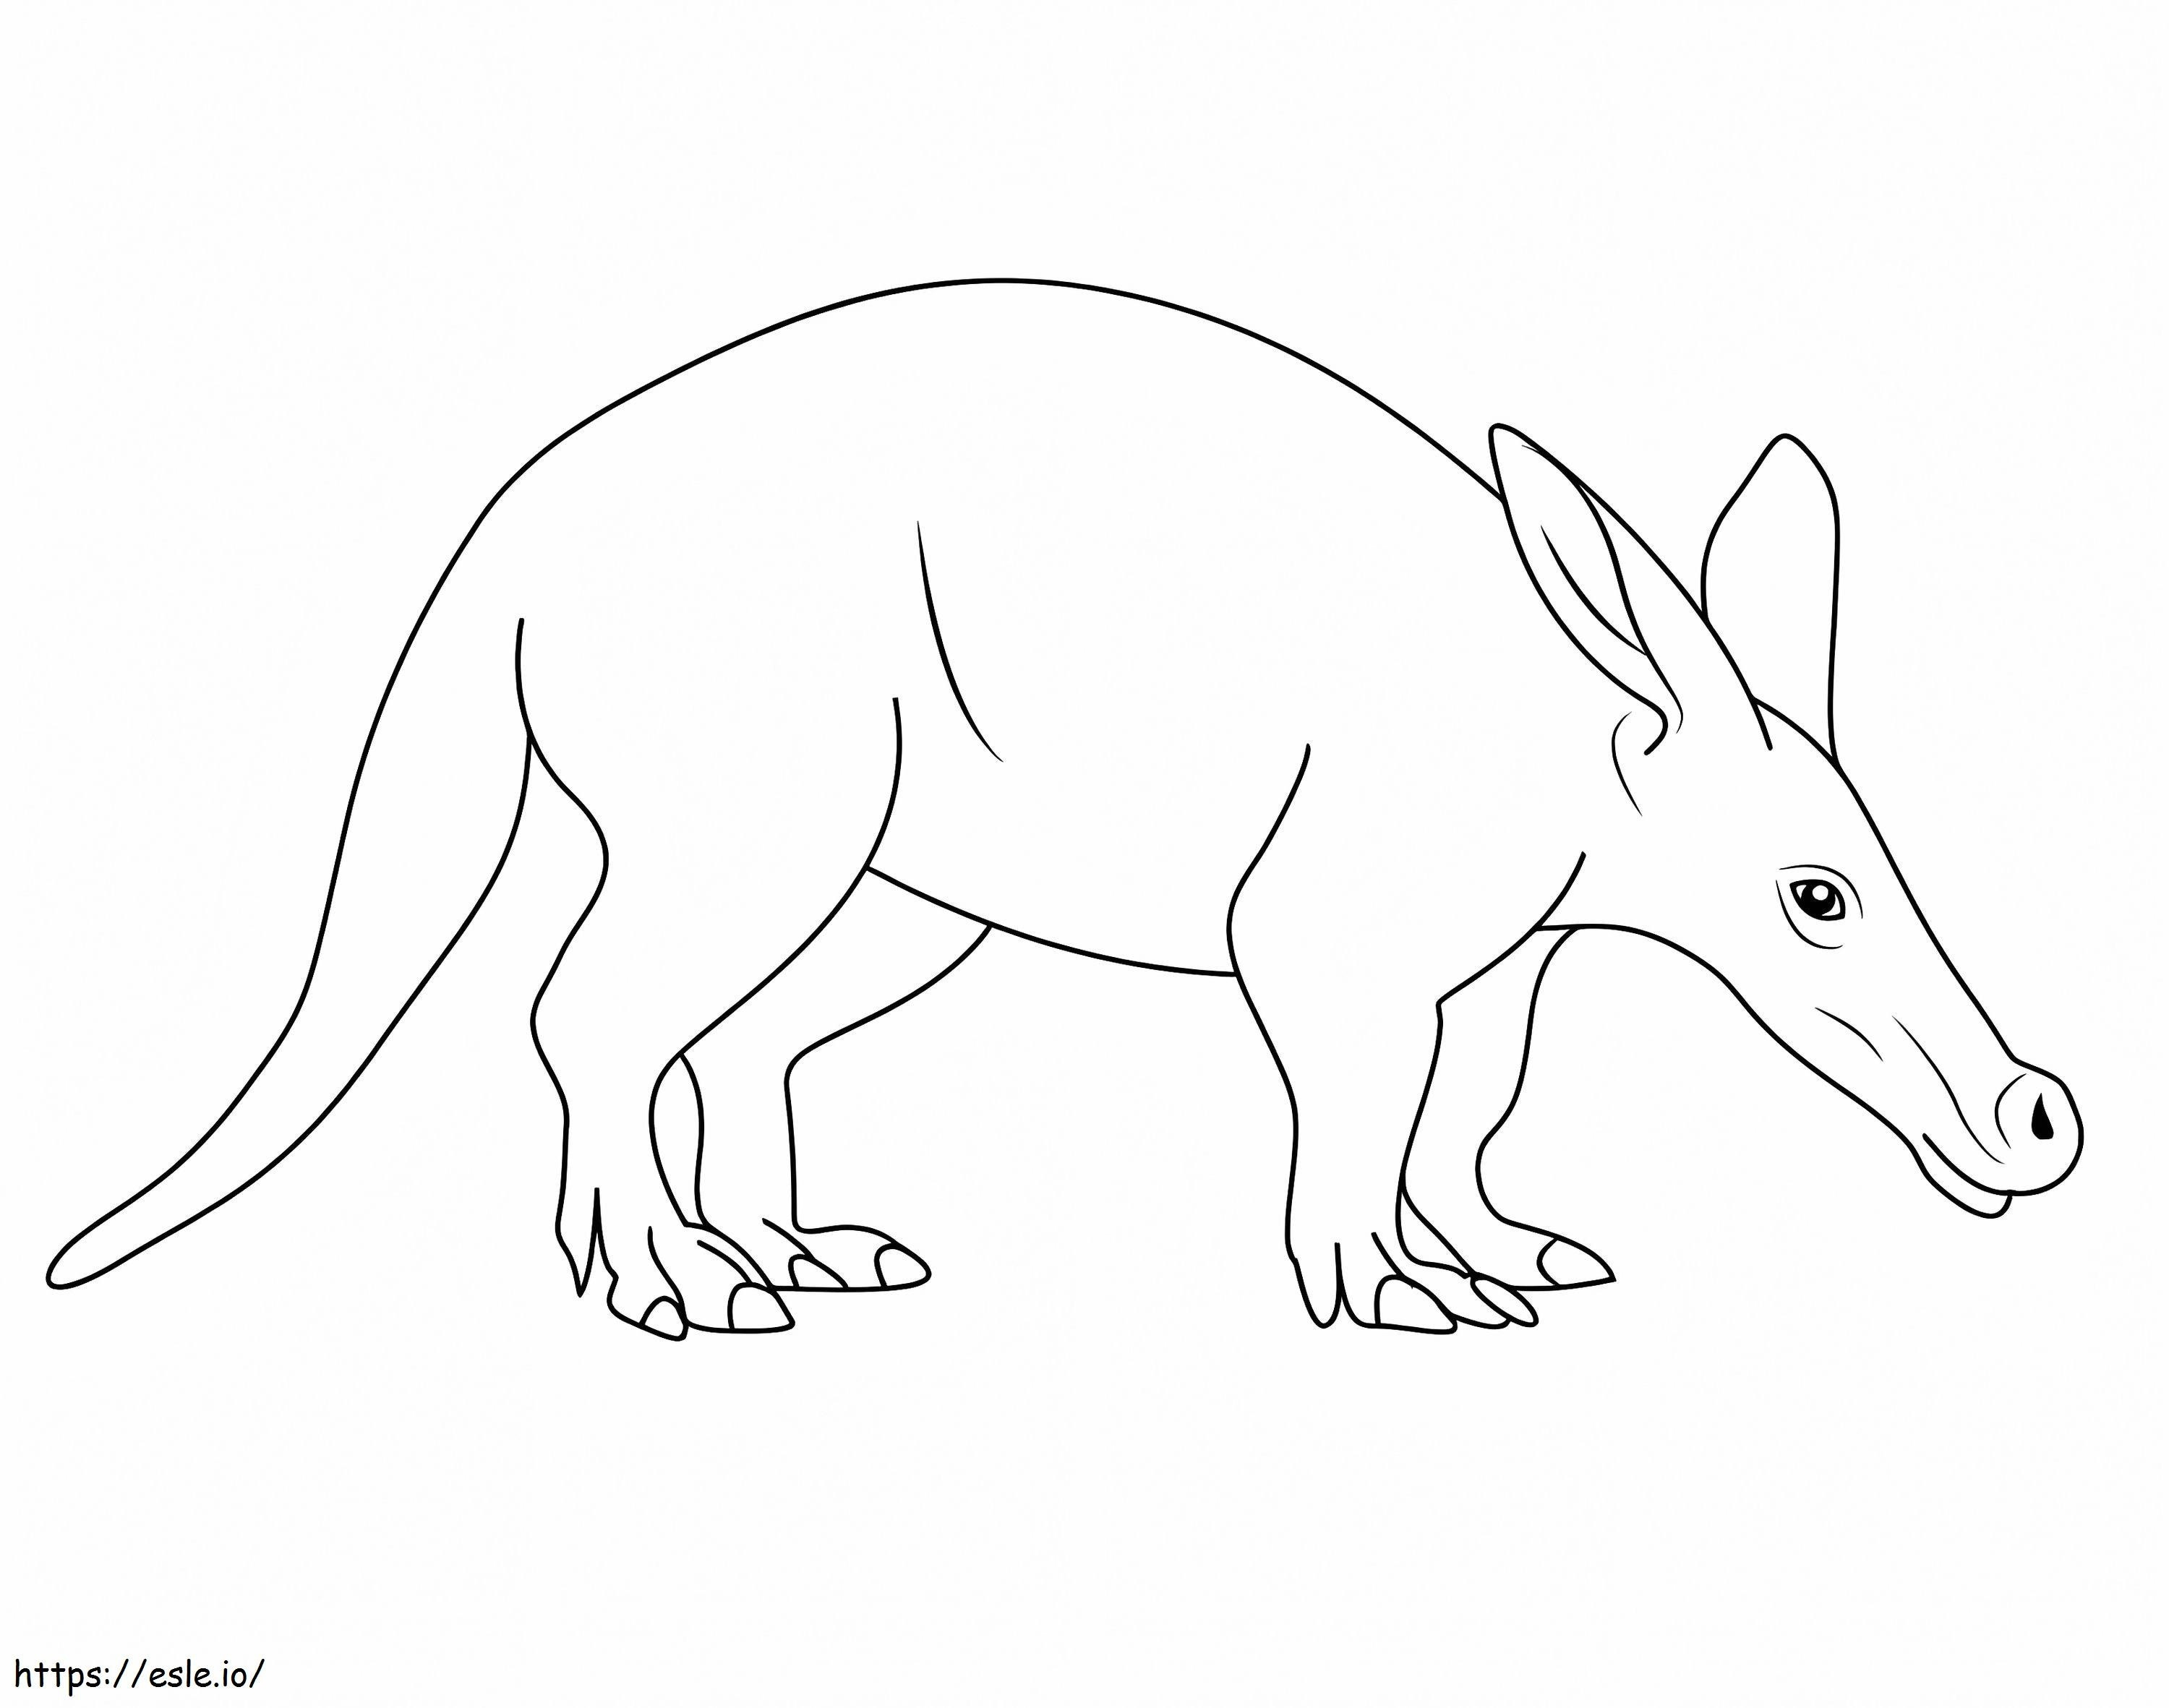 Aardvark semplice da colorare